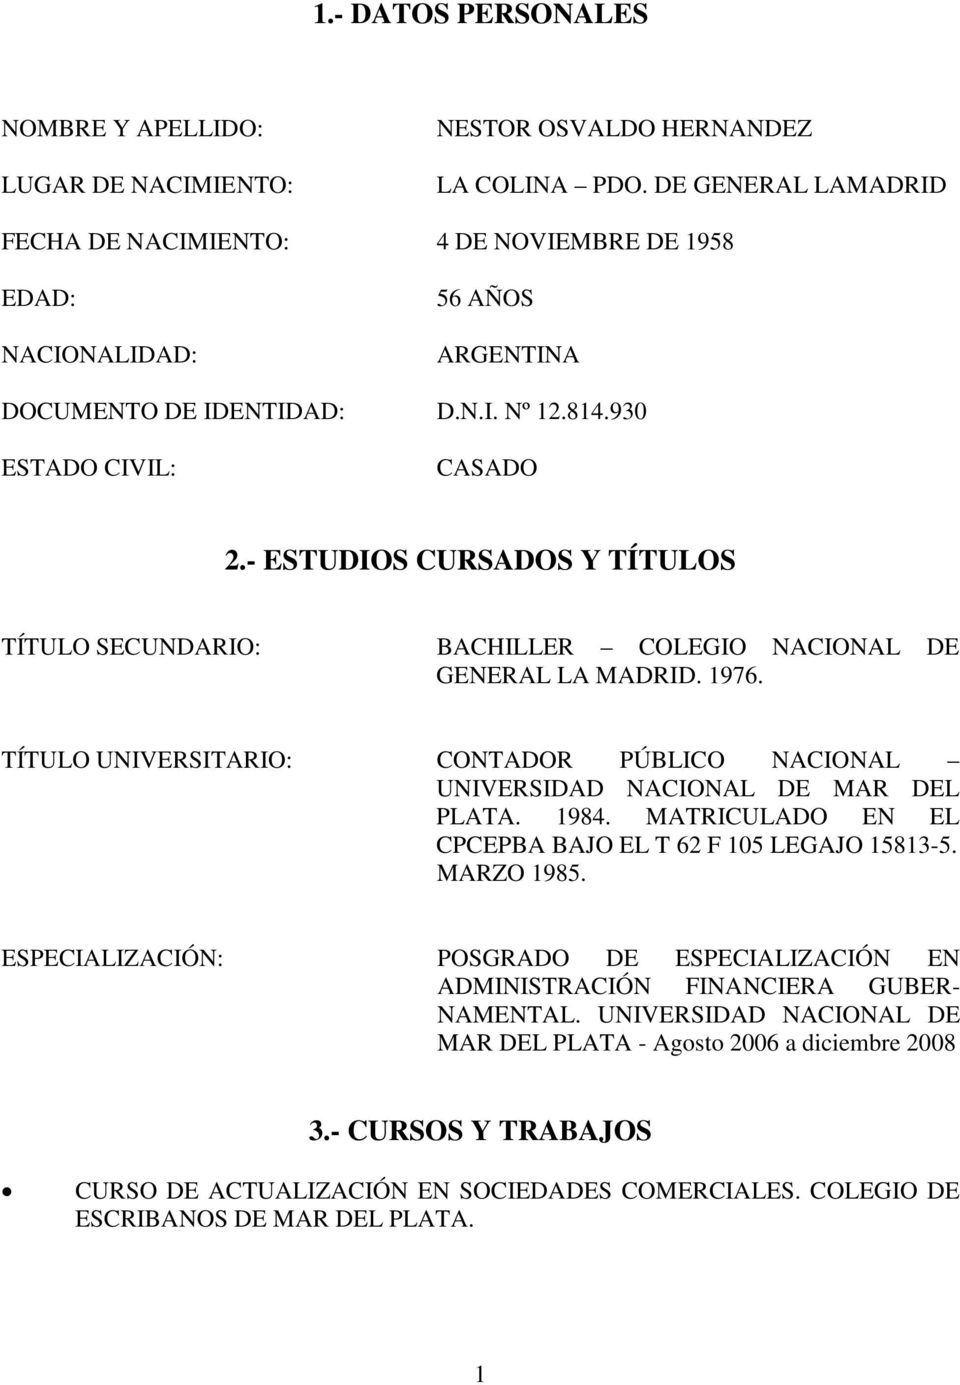 - ESTUDIOS CURSADOS Y TÍTULOS TÍTULO SECUNDARIO: BACHILLER COLEGIO NACIONAL DE GENERAL LA MADRID. 1976. TÍTULO UNIVERSITARIO: CONTADOR PÚBLICO NACIONAL UNIVERSIDAD NACIONAL DE MAR DEL PLATA. 1984.